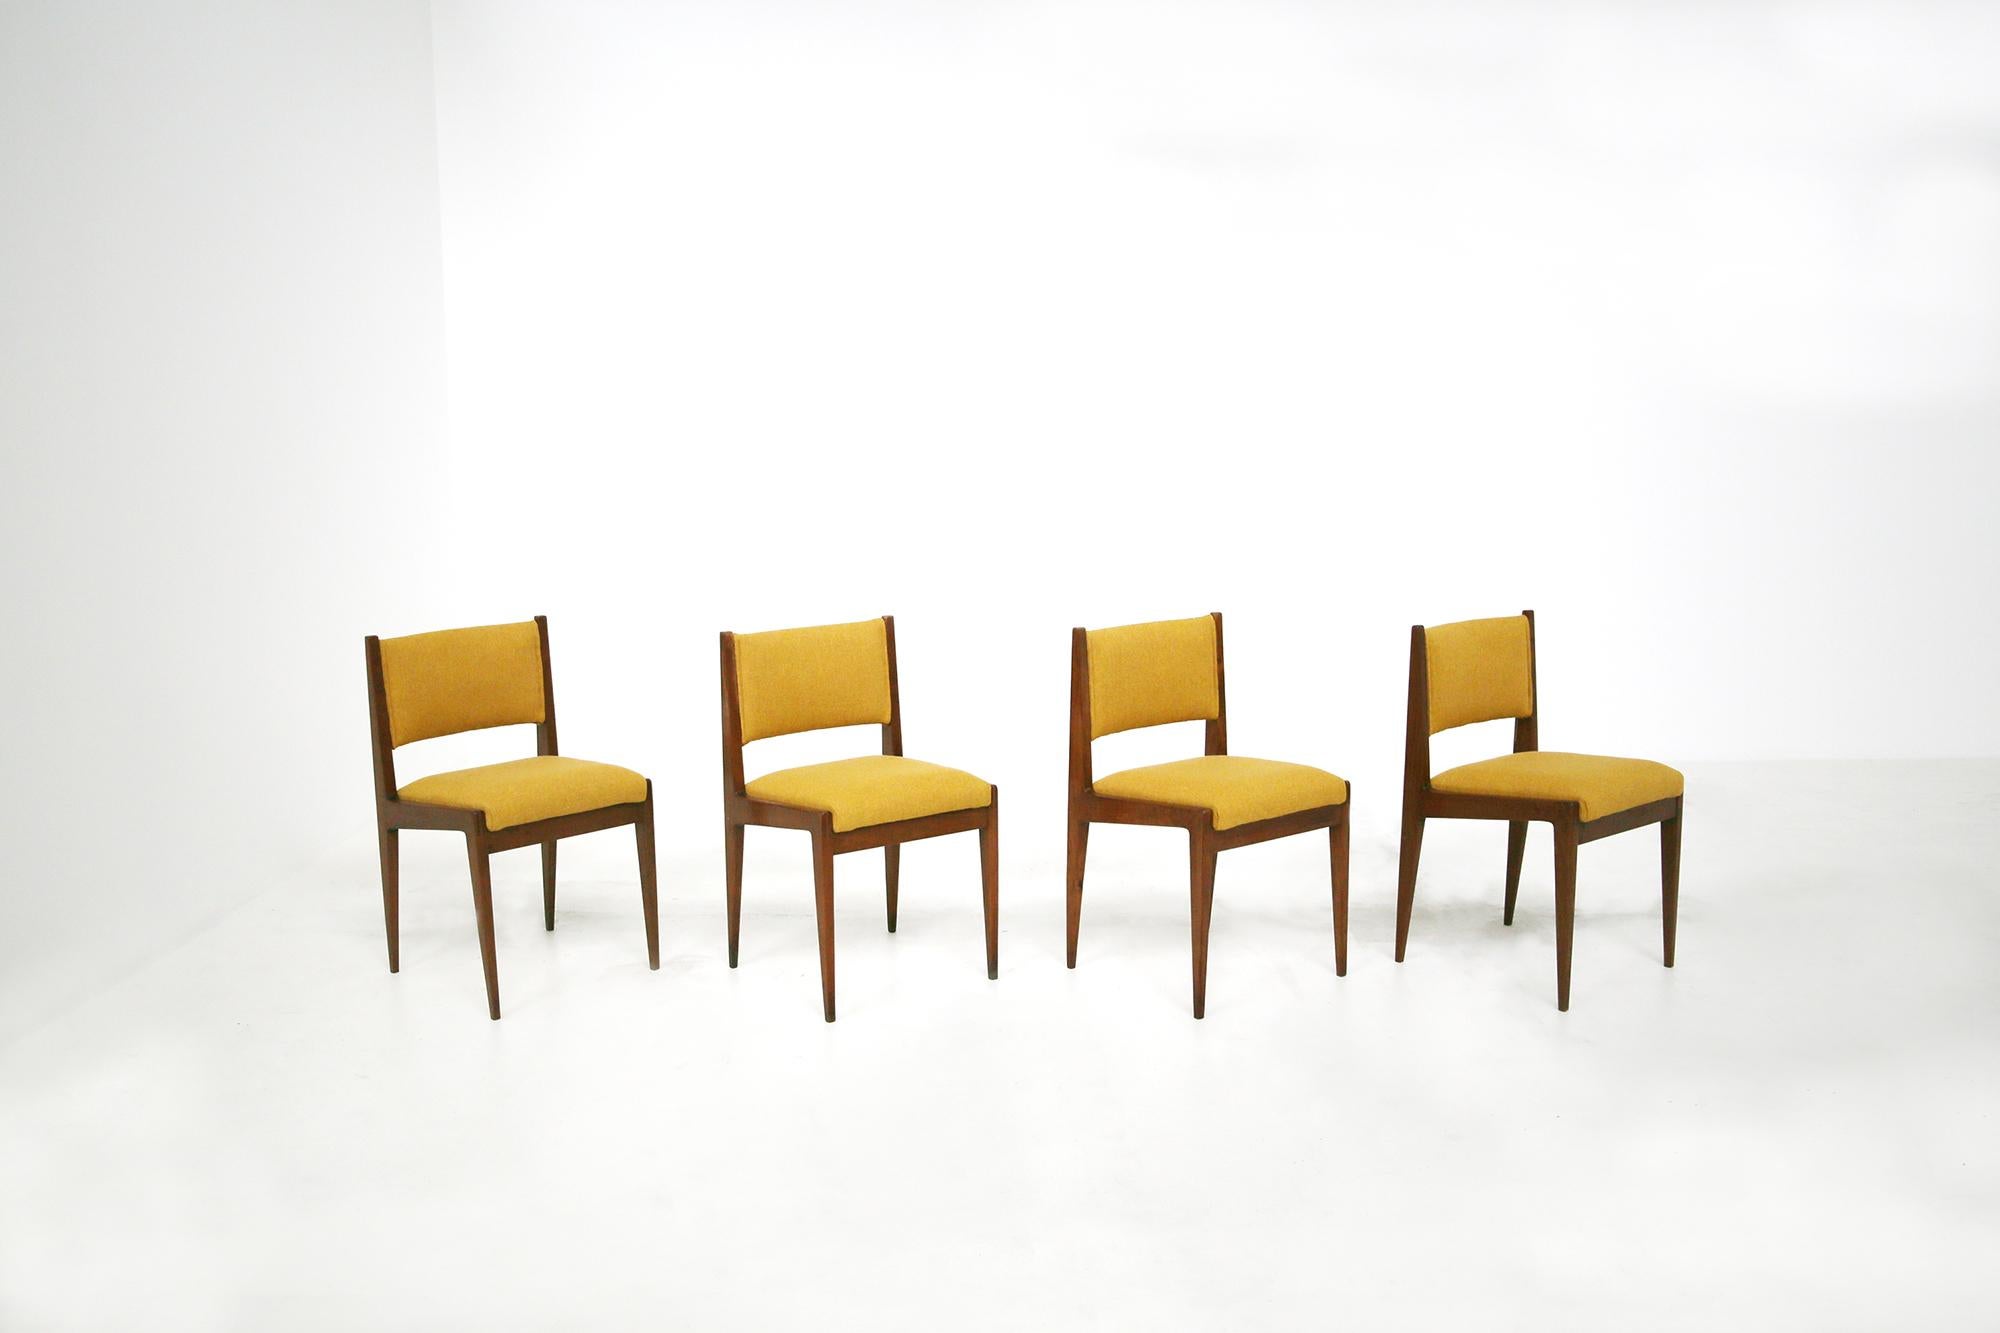 Set aus vier gelben Stühlen von Gianfranco Frattini für Bottega Ghianda, 1960er Jahre (Moderne der Mitte des Jahrhunderts)